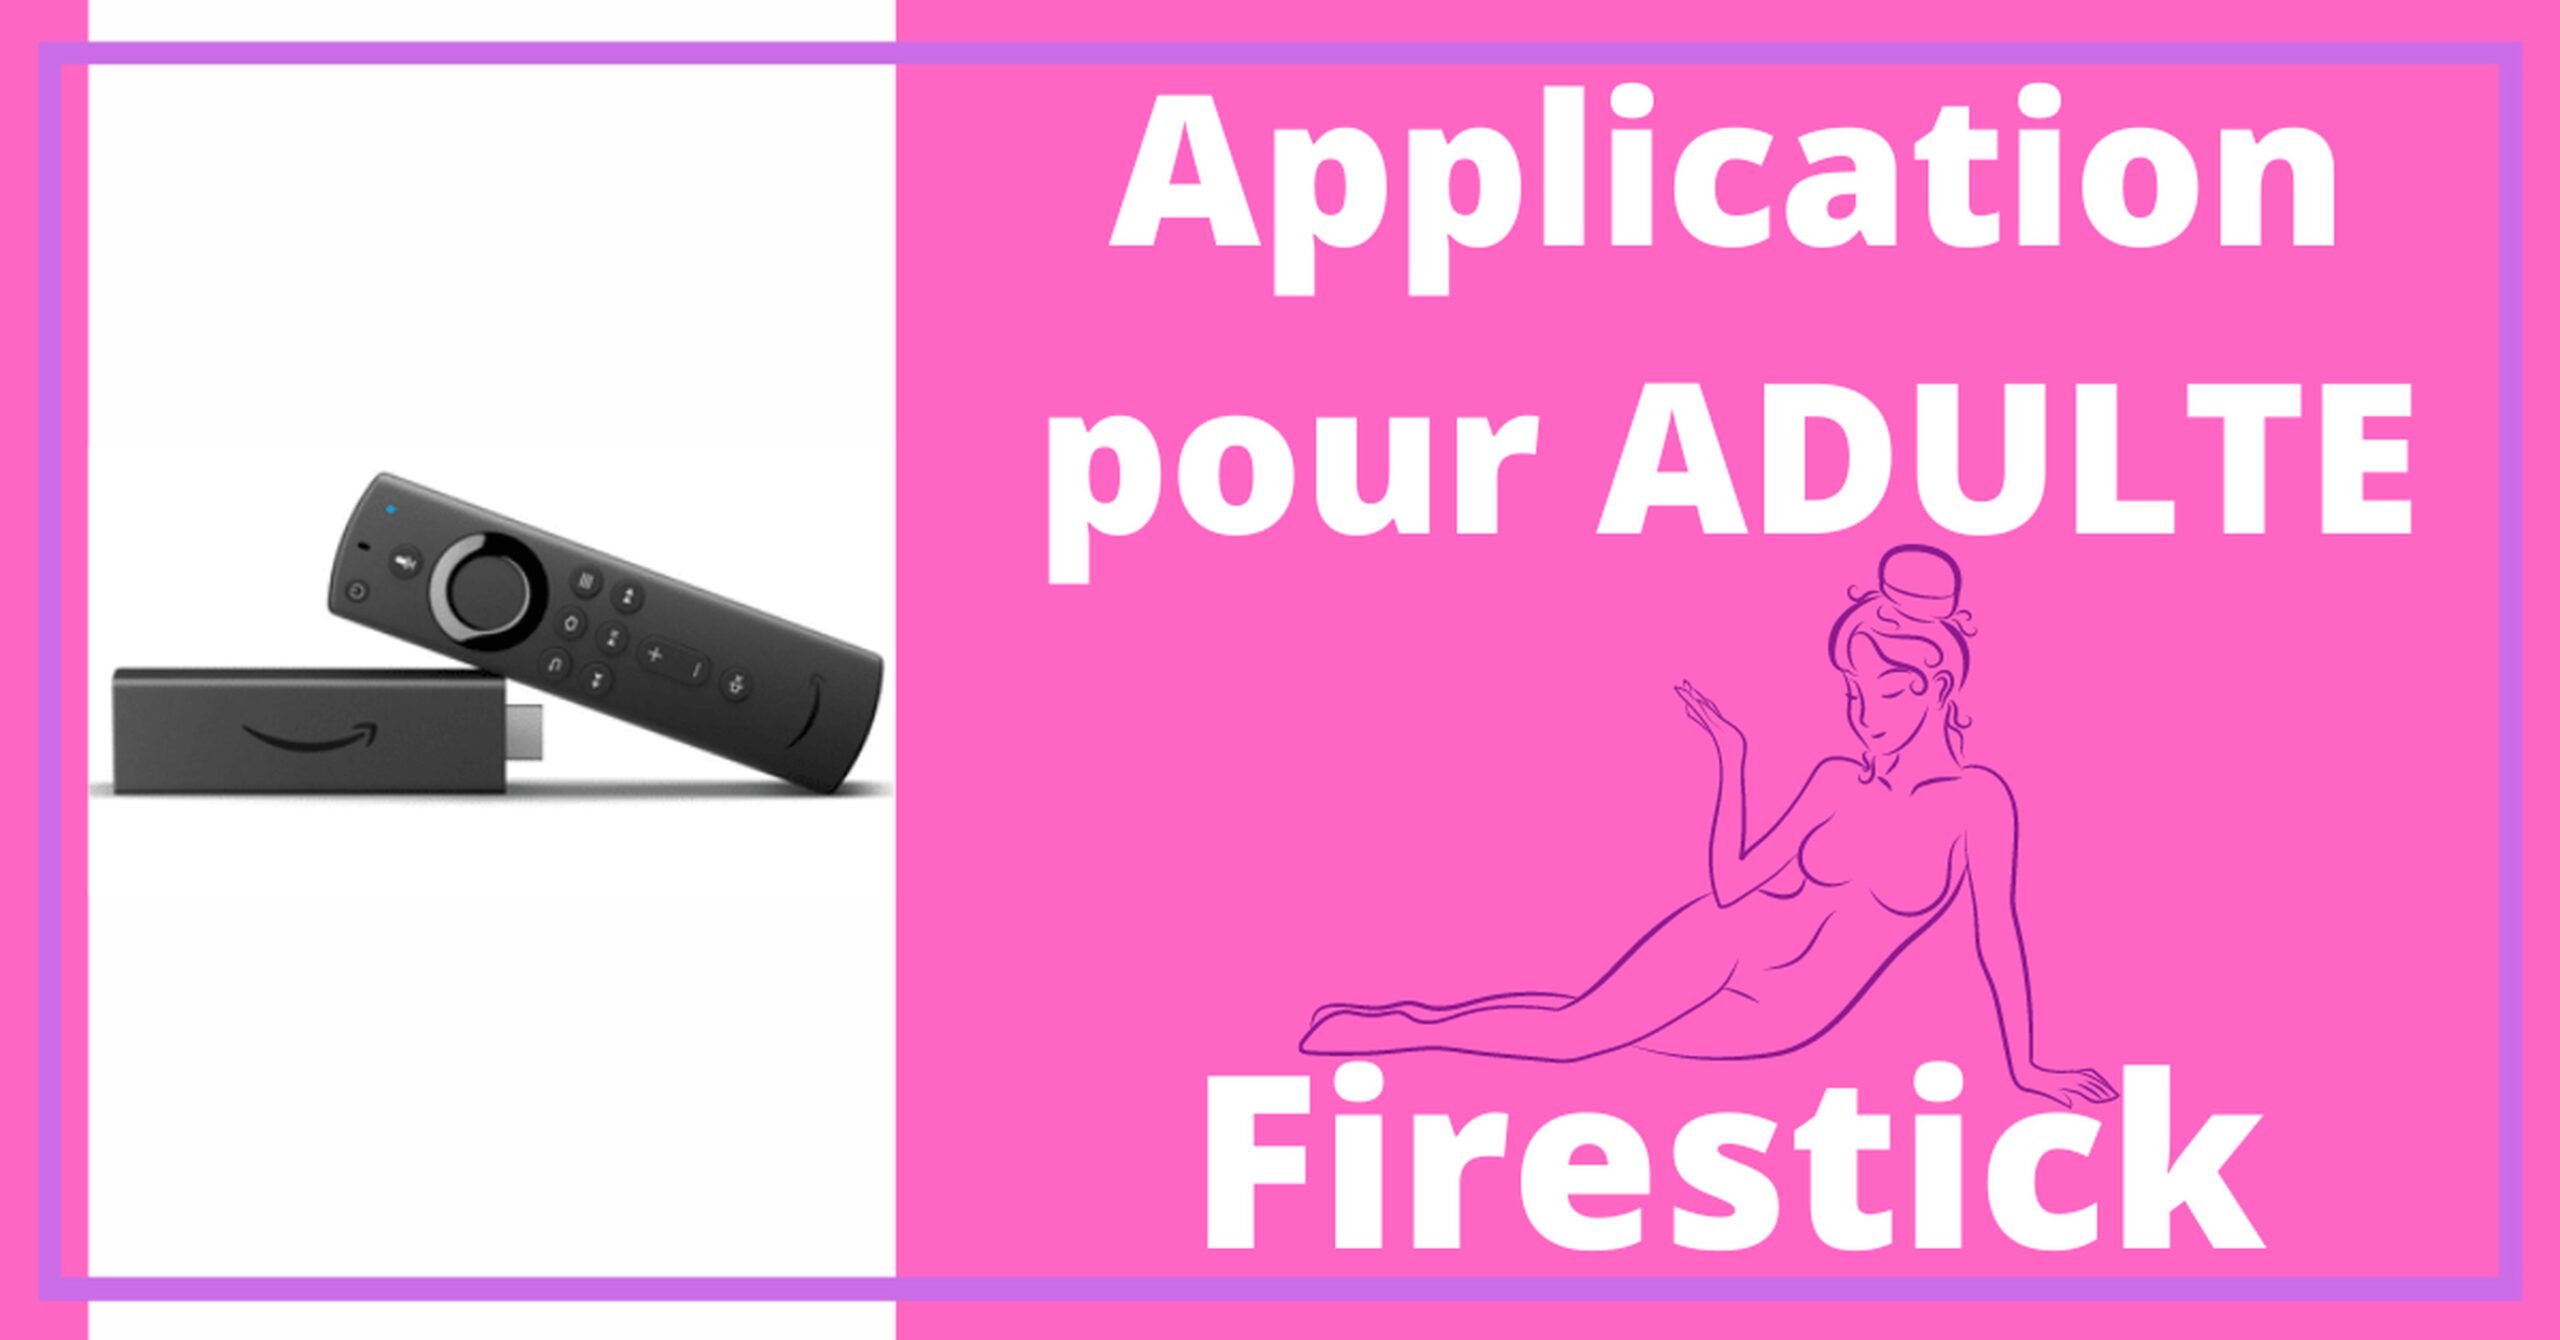 Fire TV Stick - Meilleure Application Adulte pour Fire TV 8